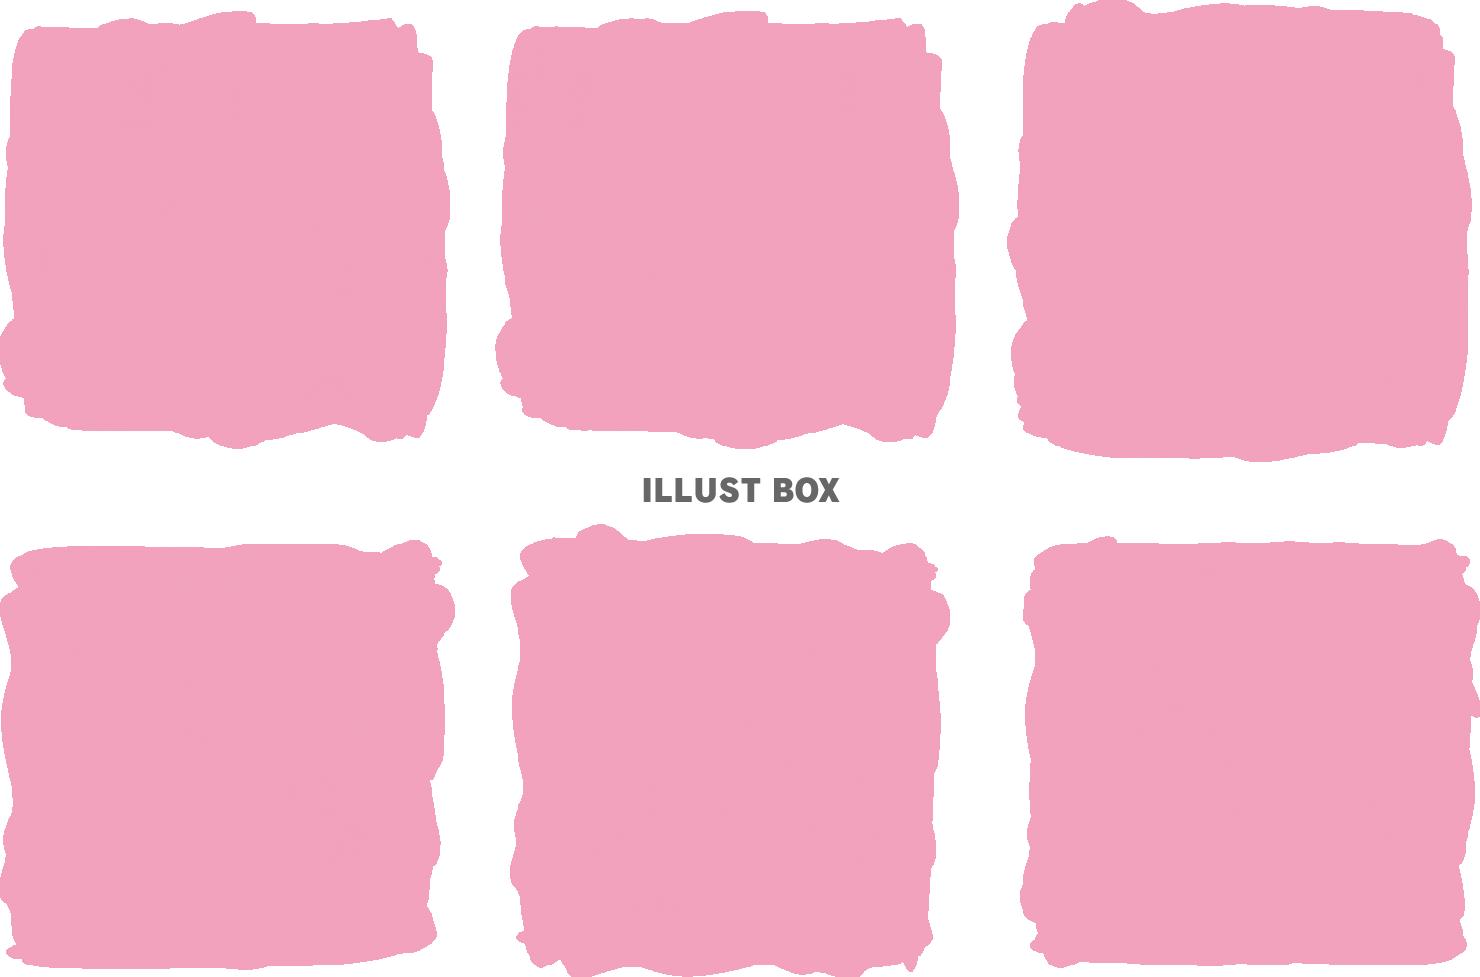 無料イラスト 薄ピンク水彩飾りイラストおしゃれフレーム枠アイコンピンク色手